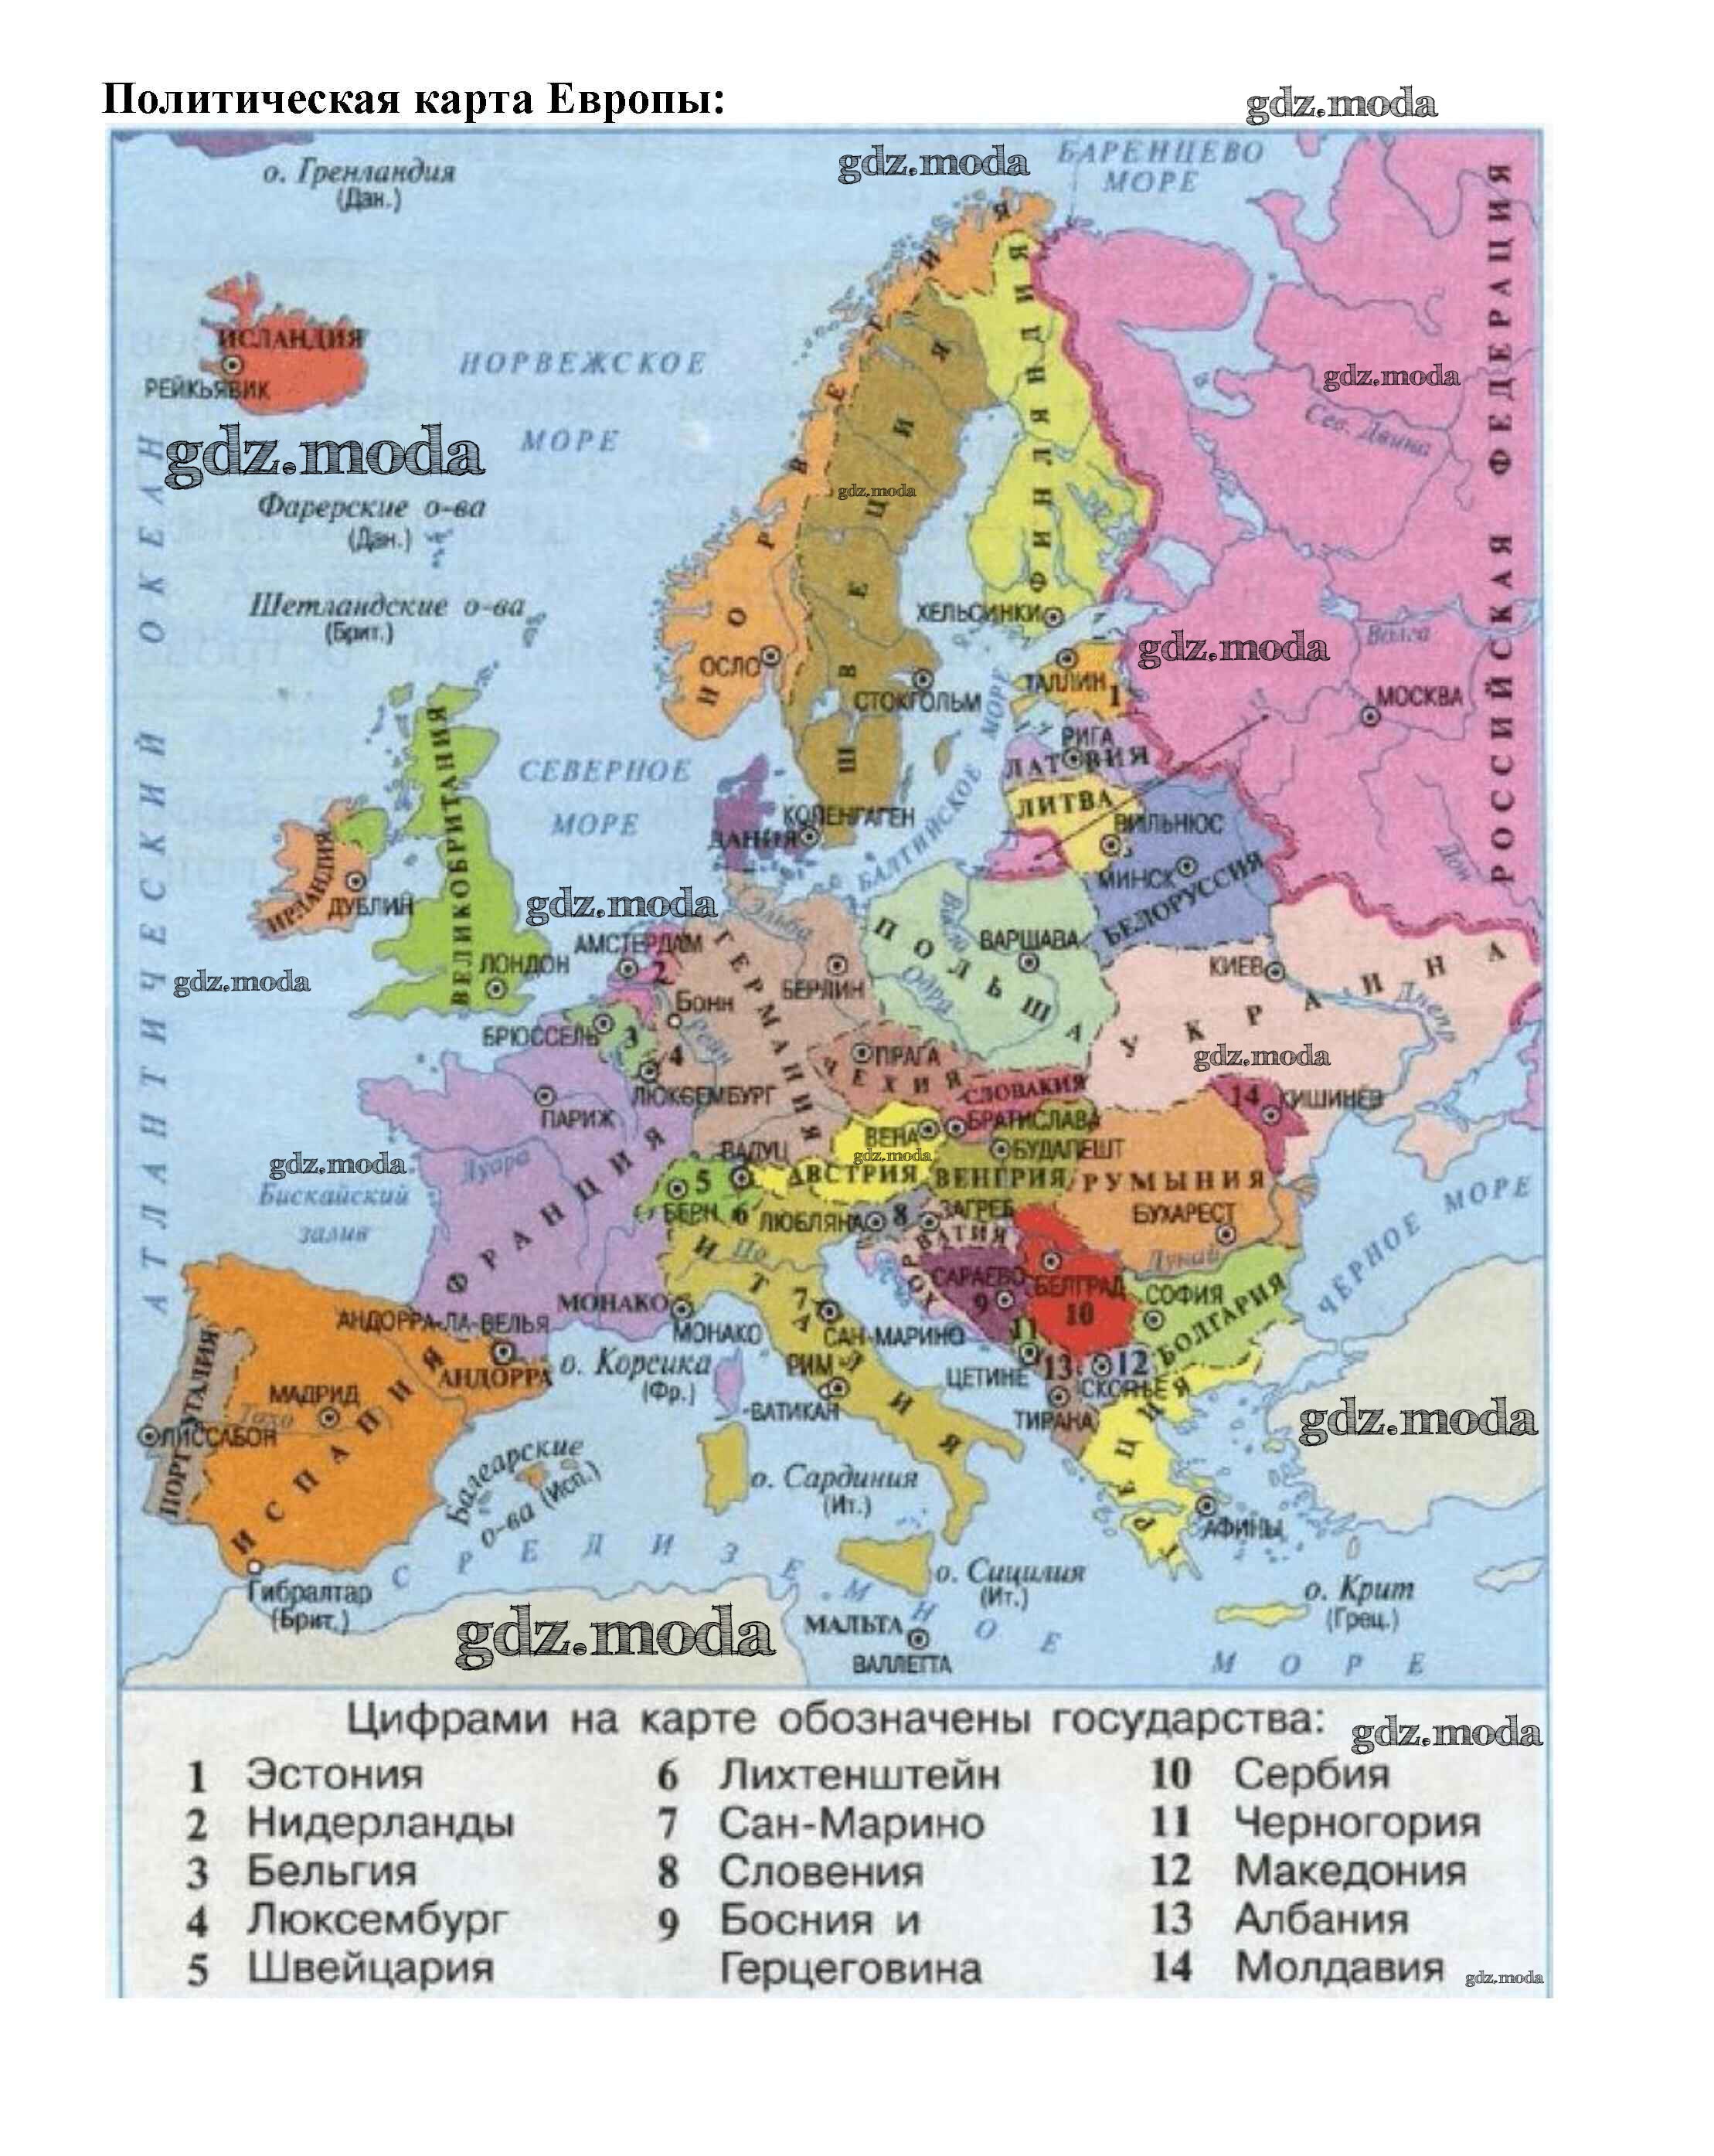 Покажите на карте страны северной европы